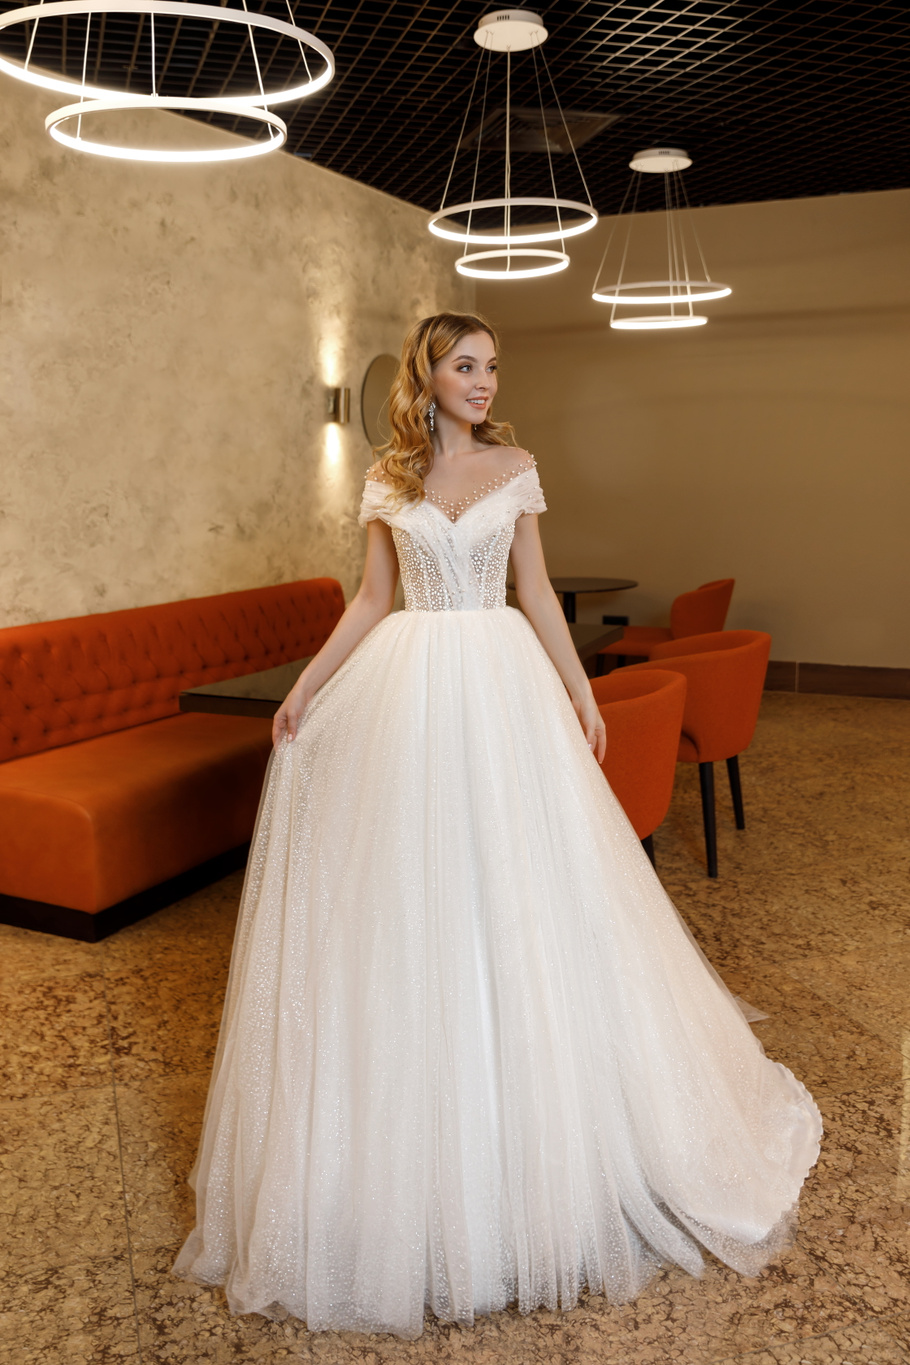 Купить свадебное платье «Брайд» Олег Бабуров из коллекции 2021 года в салоне «Мэри Трюфель»